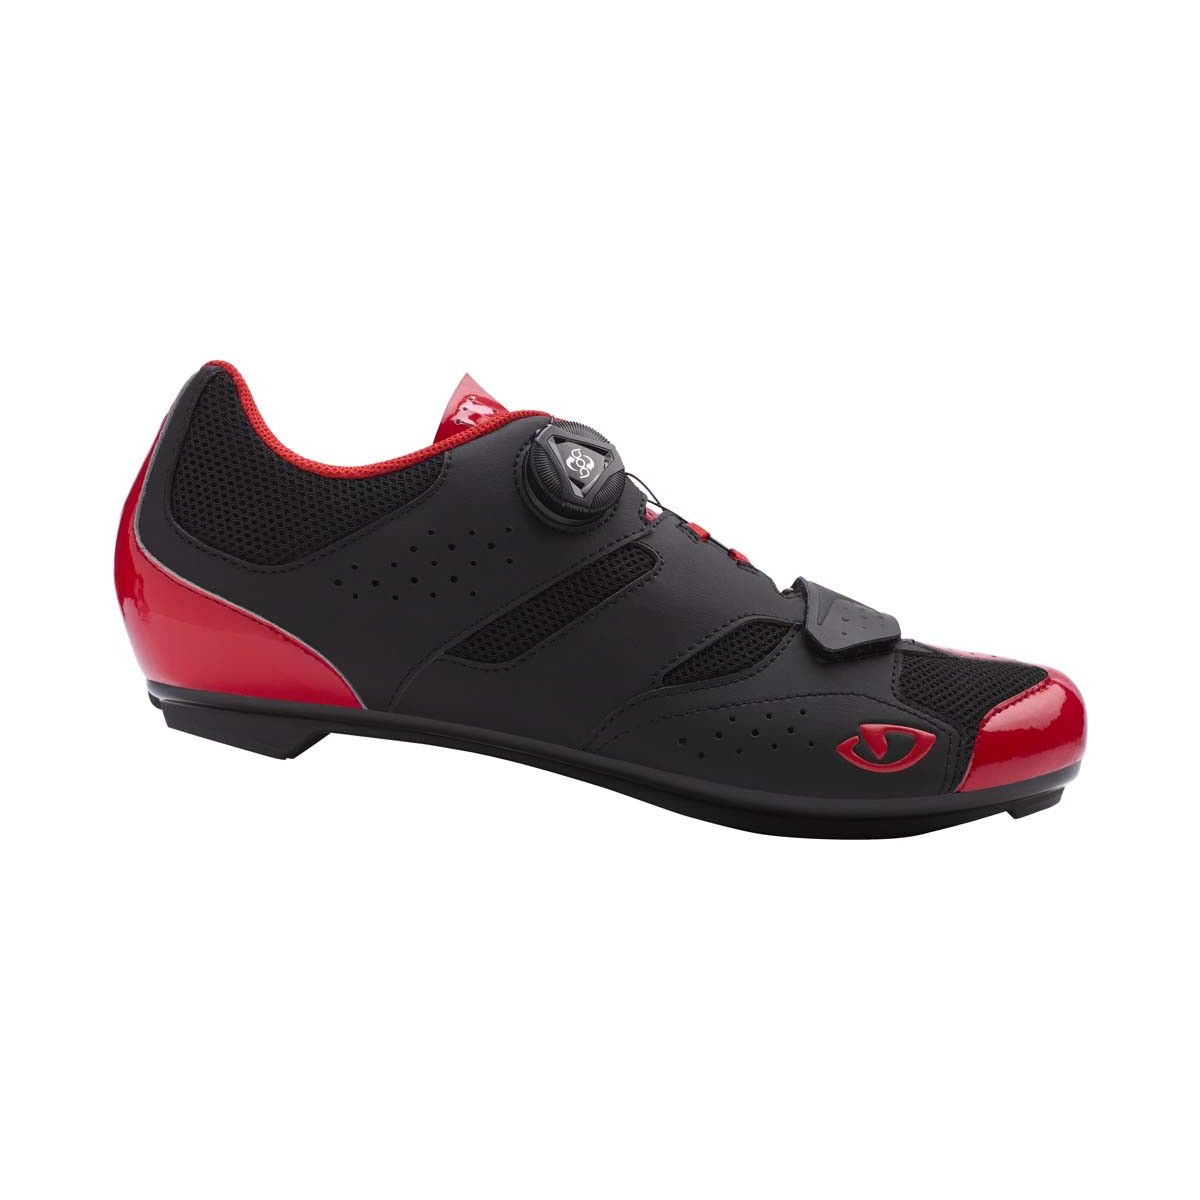 Zapatillas Giro Savix rojo / negro 2019